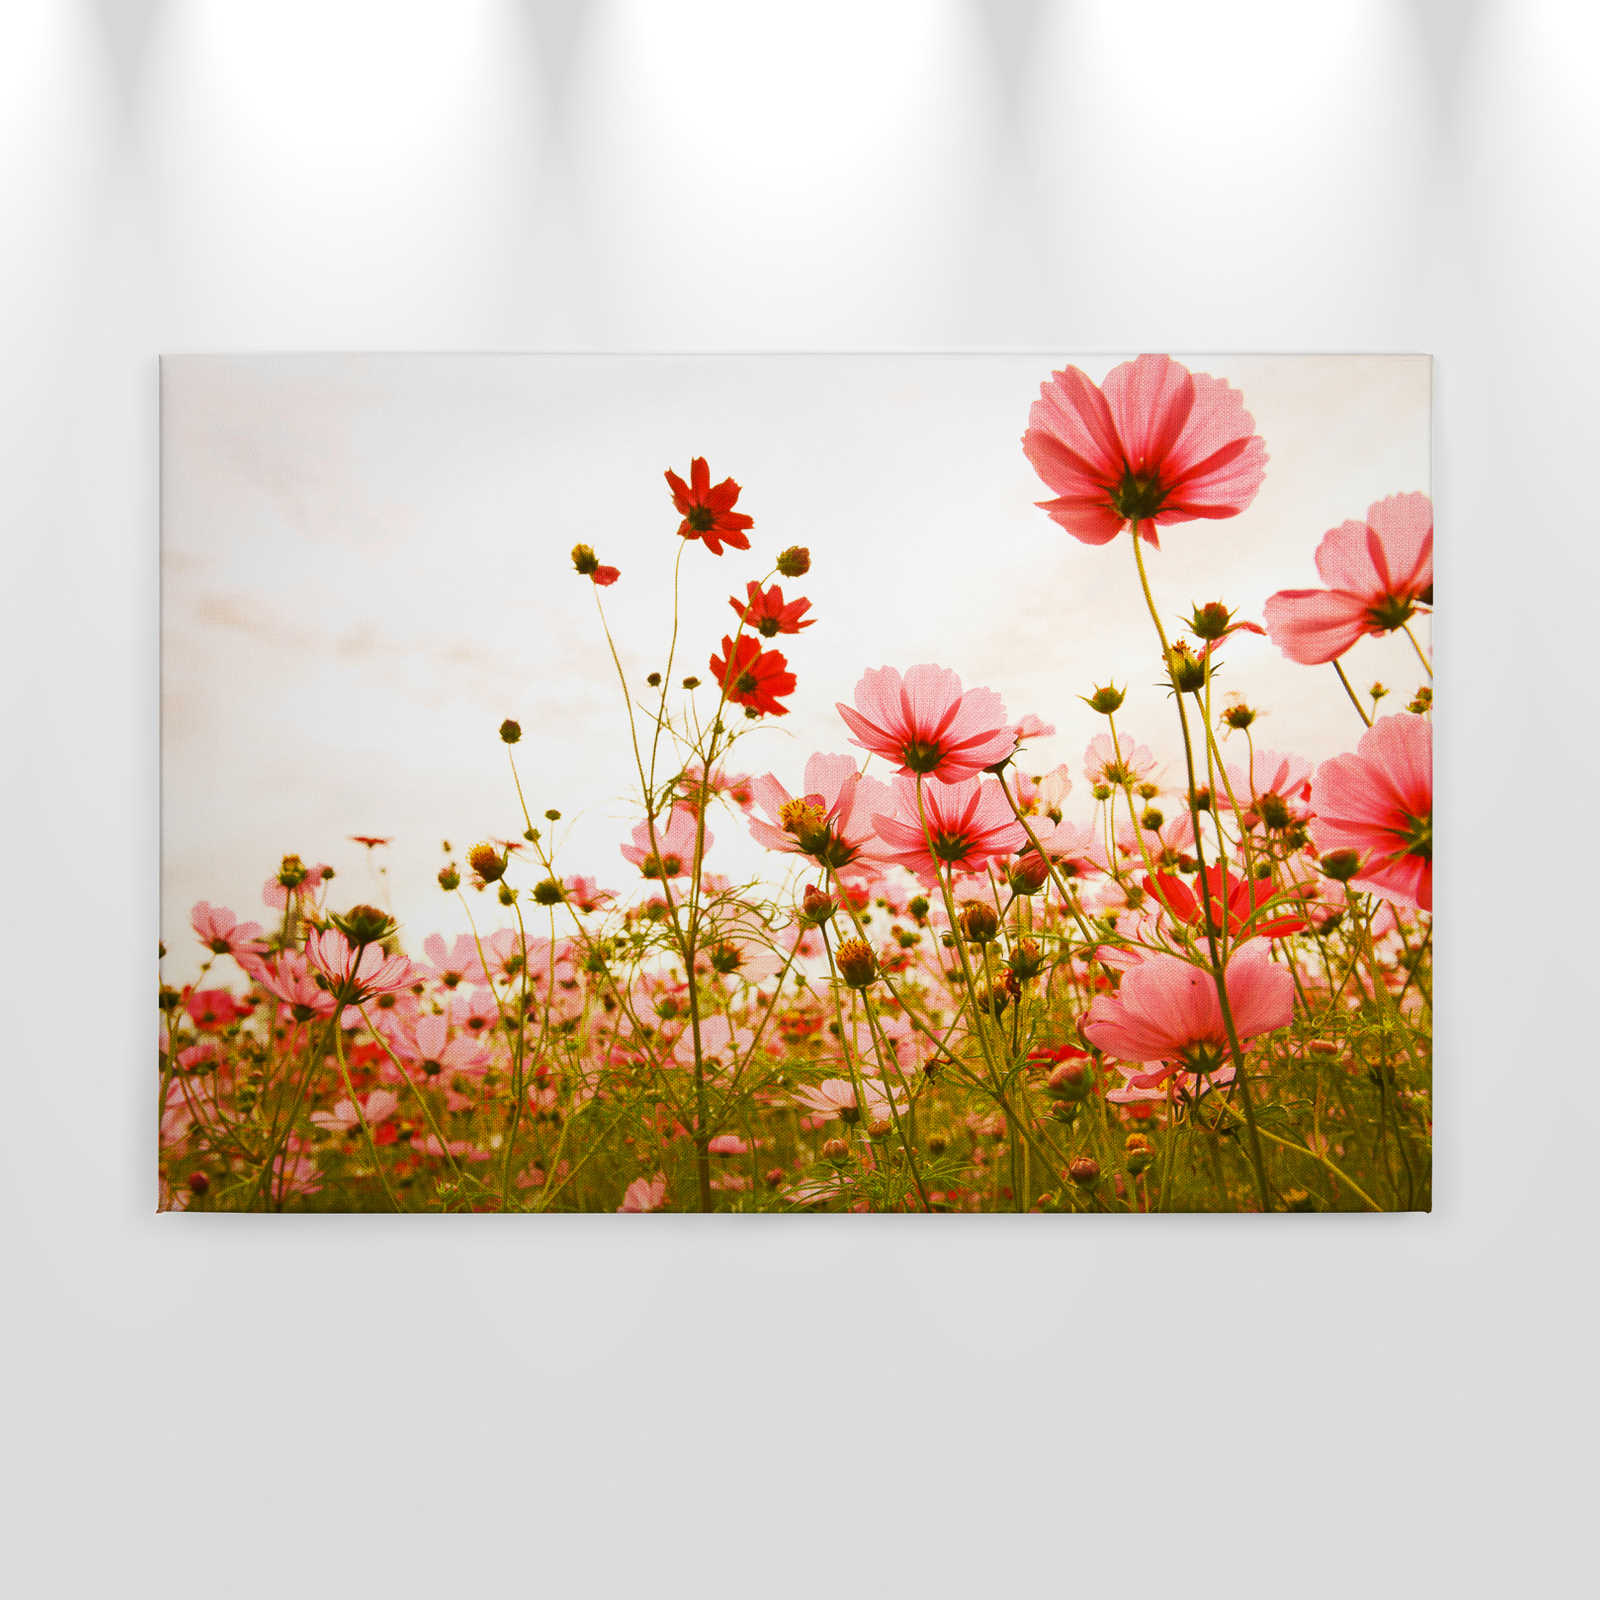             Toile avec pré fleuri au printemps | rose, vert, blanc - 0,90 m x 0,60 m
        